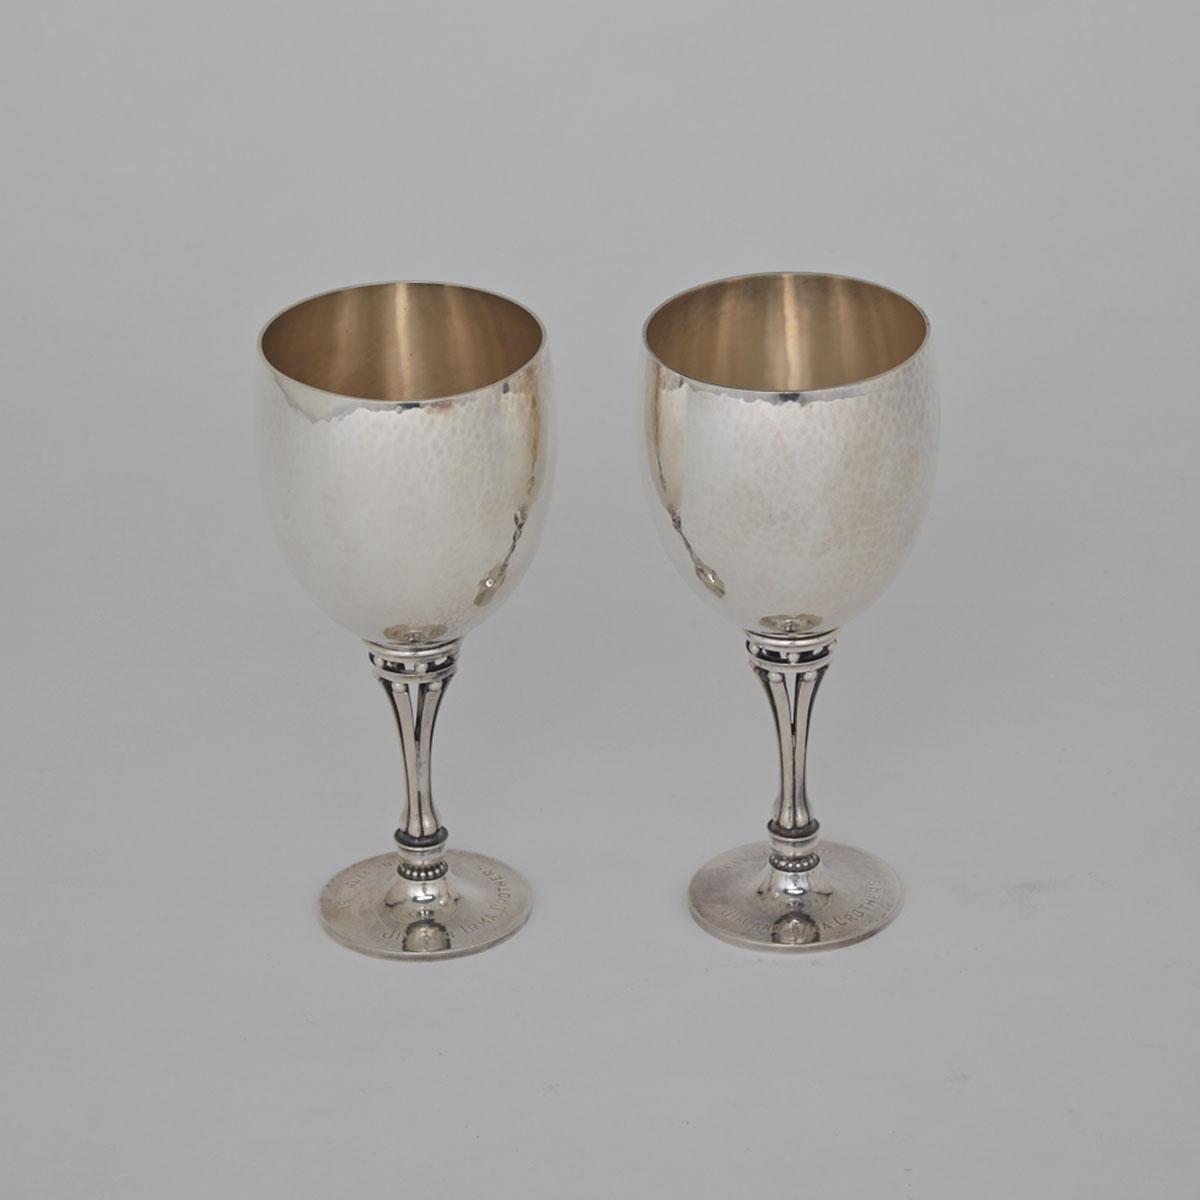 Pair of Danish Silver Goblets, #532B, Harald Nielsen for Georg Jensen, Copenhagen, c.1960